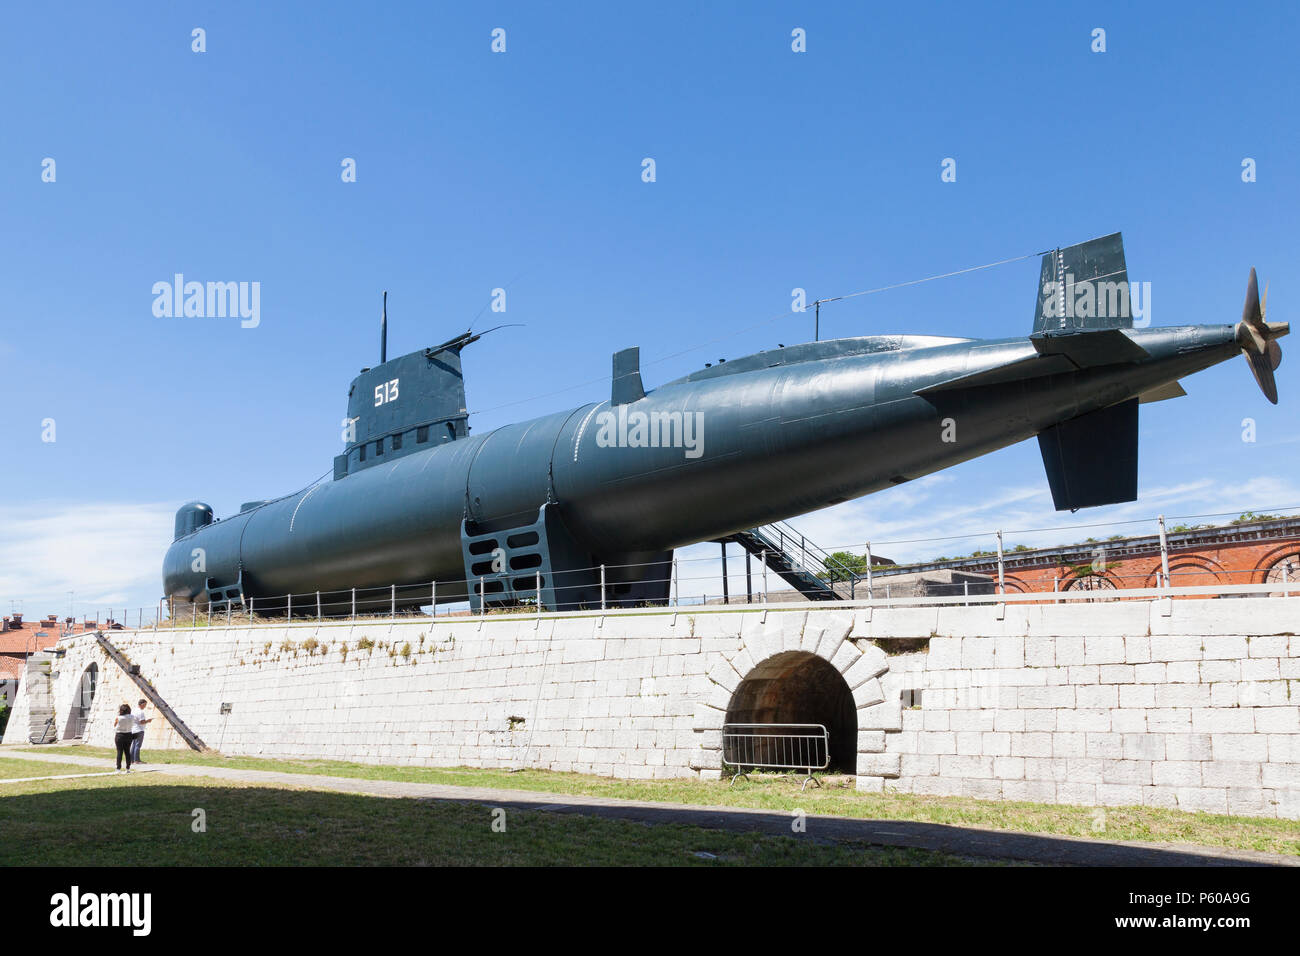 Storica Enrico Dandolo (S 513) sottomarino, Arsenale, Castello, Venezia, Veneto, Italia. Ultimo veneziano sottomarino navale costruito 1969 decommisioned 1999 Foto Stock